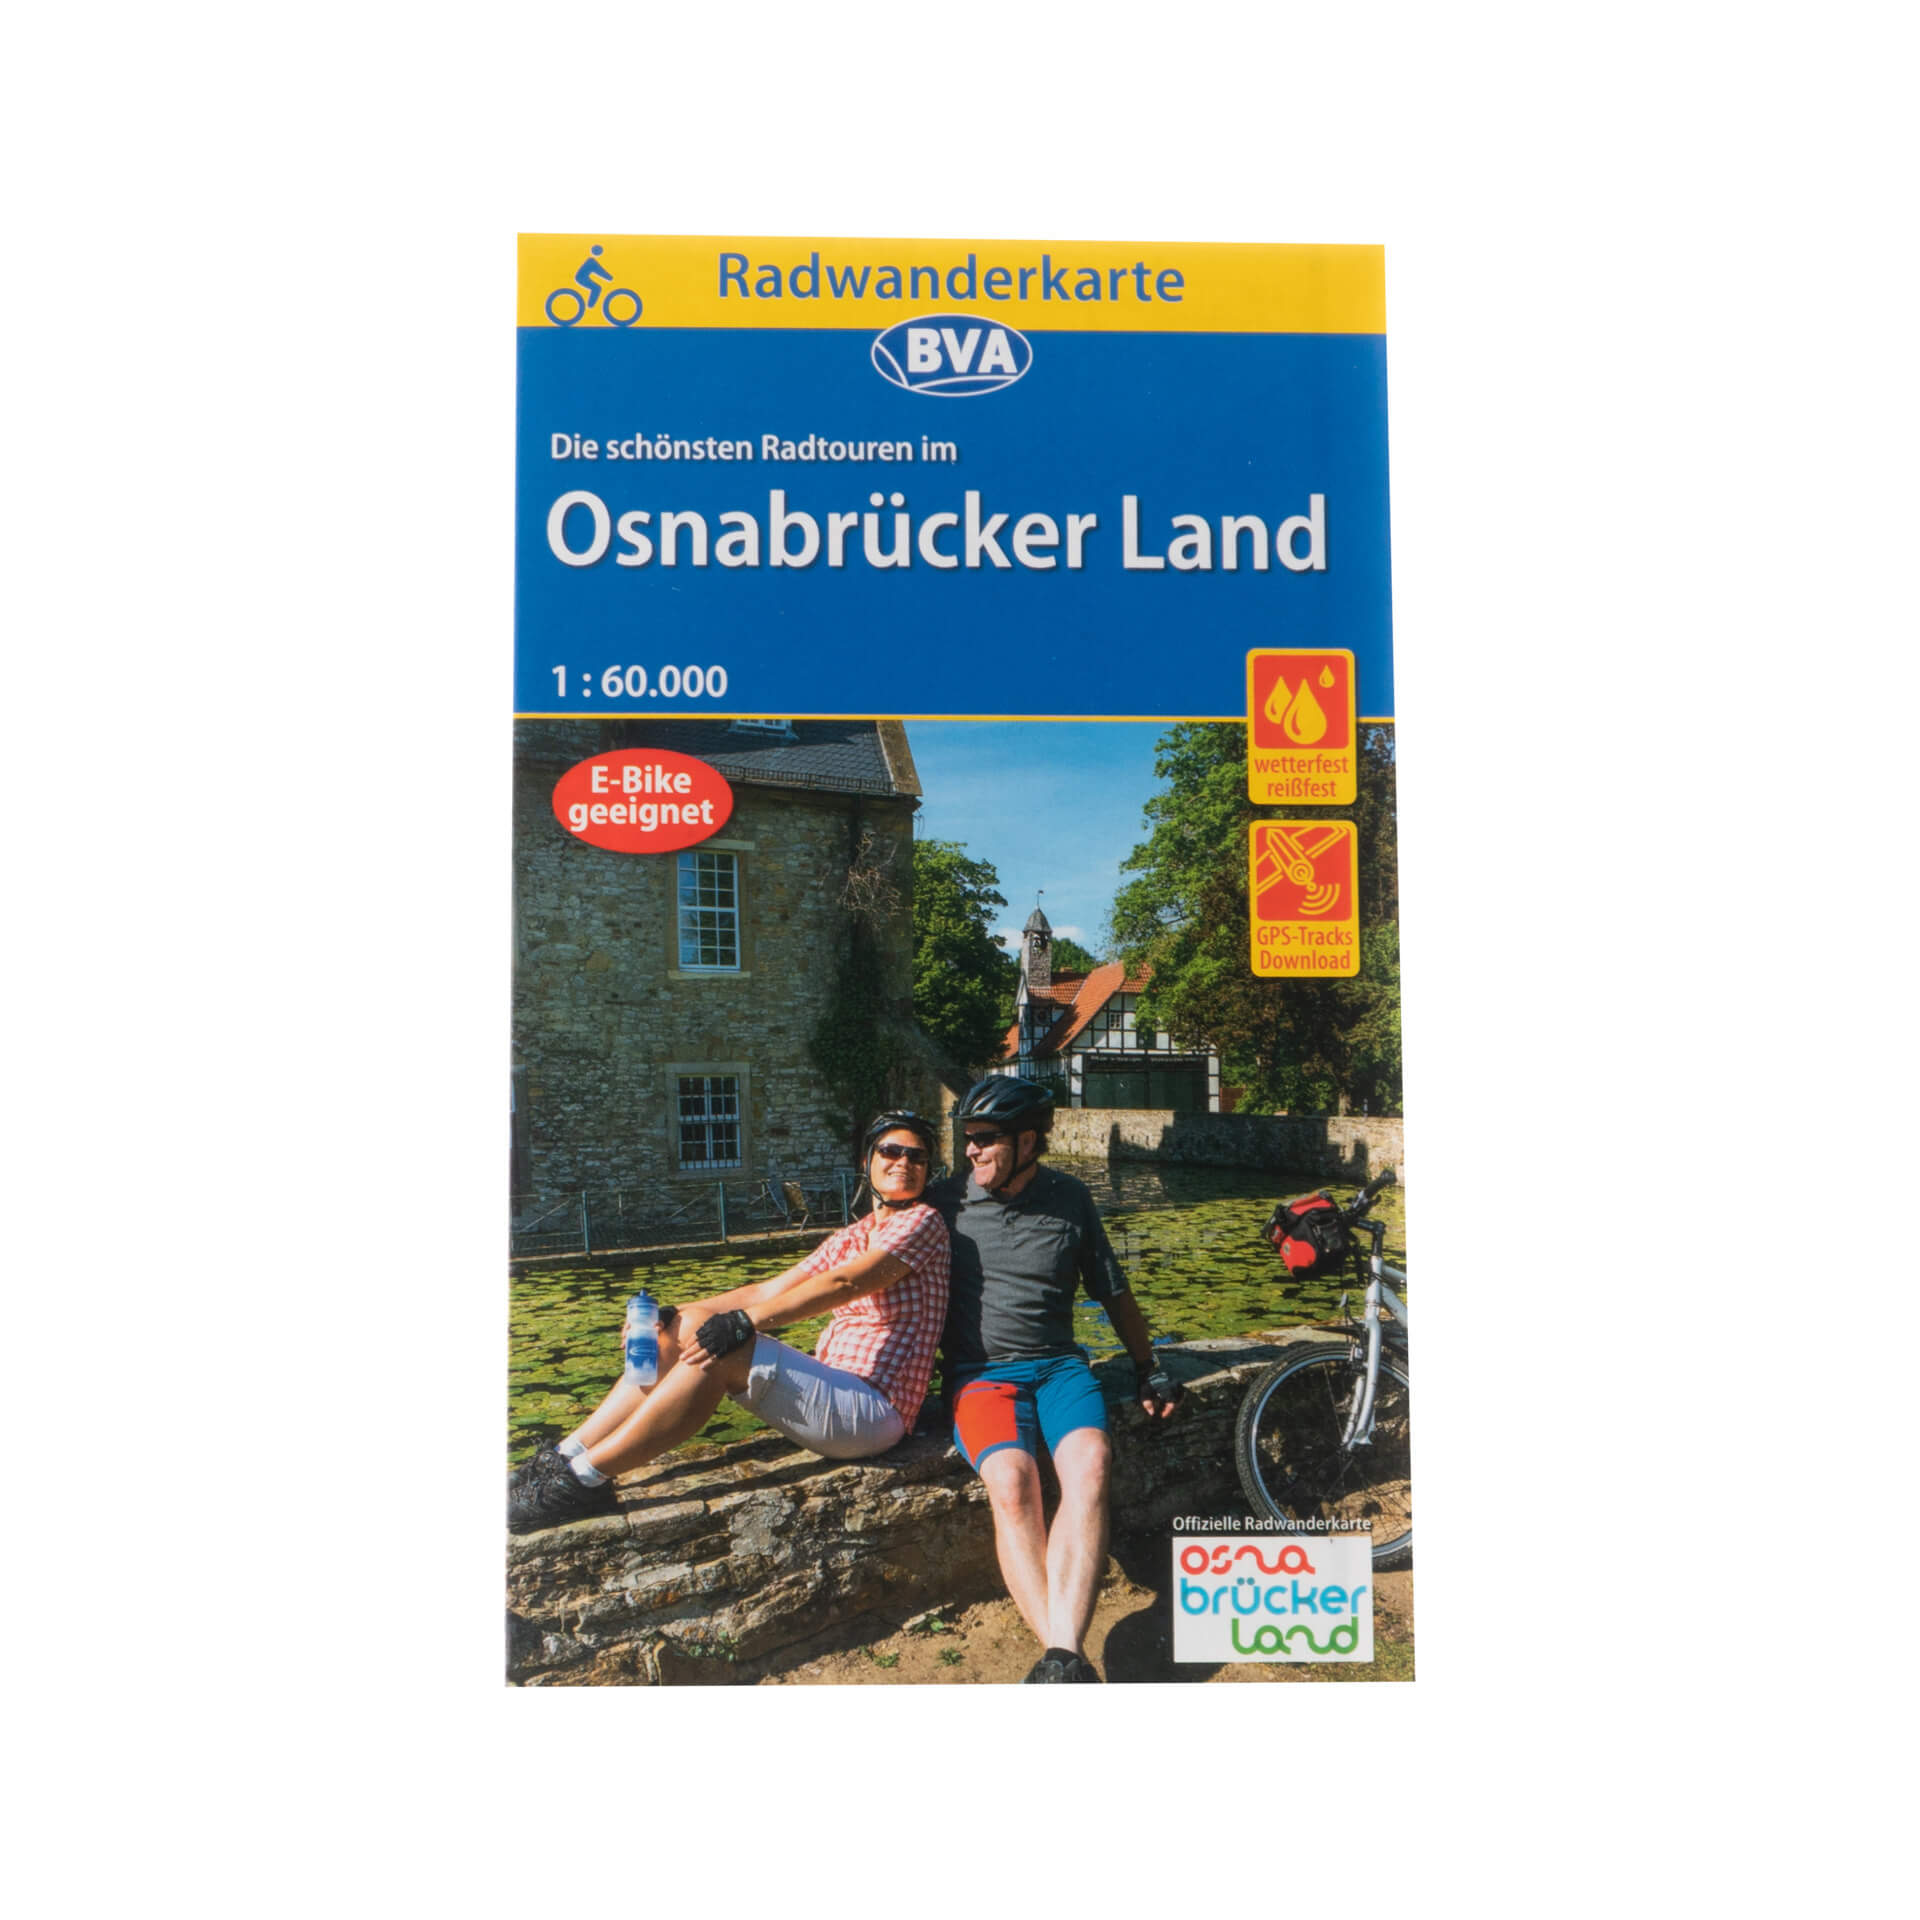 Radwanderkarte Osnabrücker Land